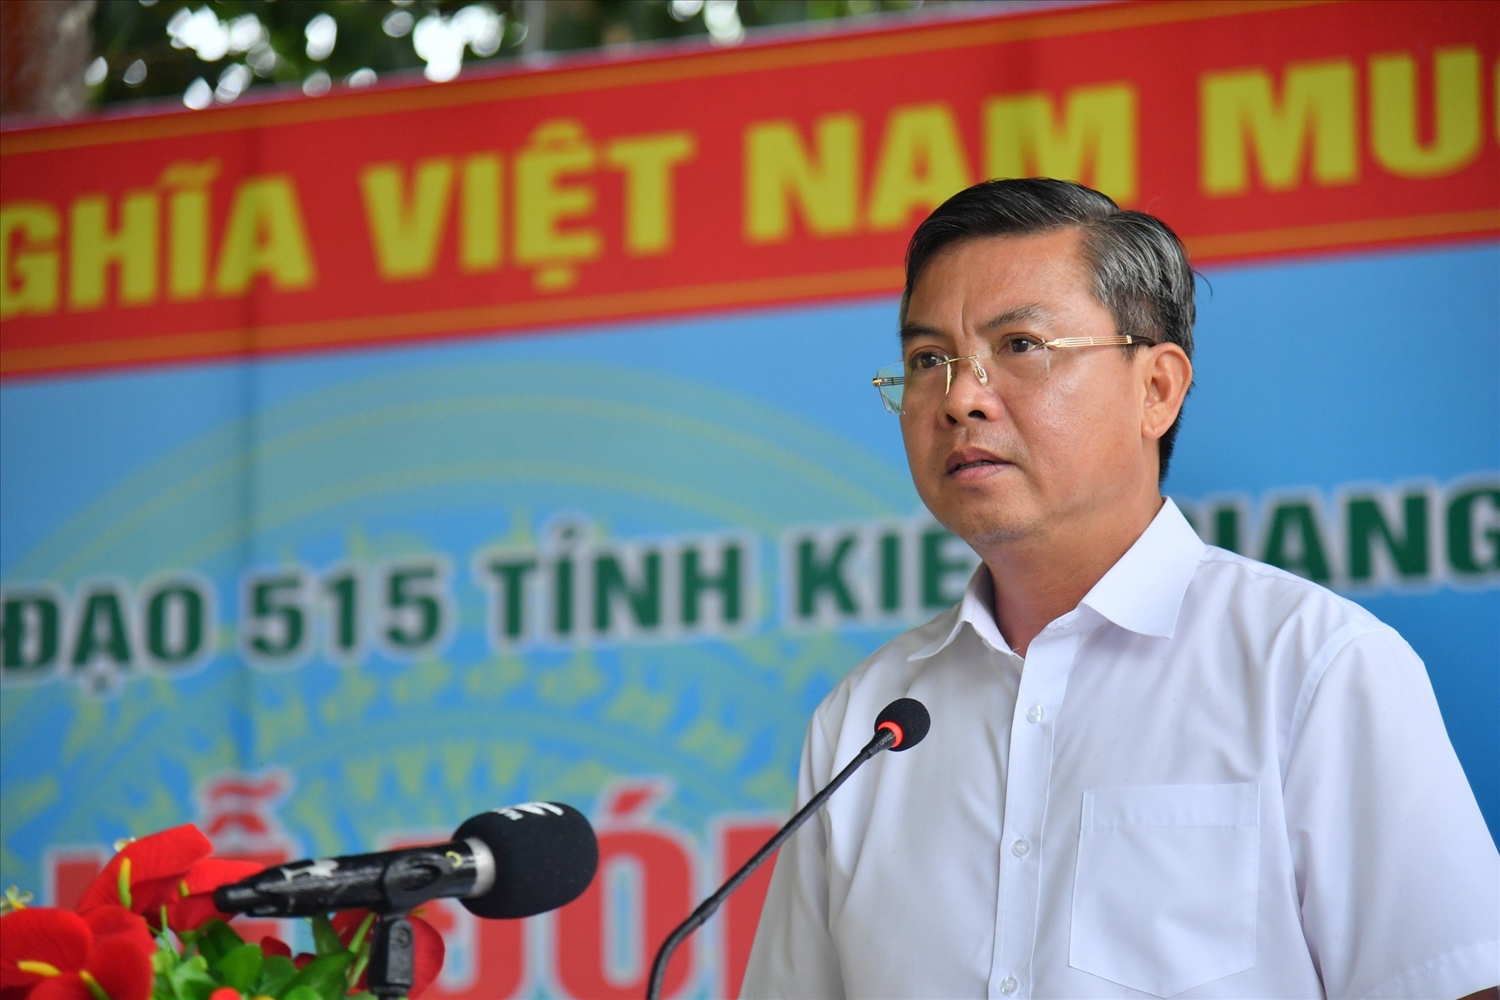 Ông Nguyễn Lưu Trung, Phó Chủ tịch UBND tỉnh, Trưởng Ban Chỉ đạo 515 tỉnh Kiên Giang phát biểu tại buổi lễ 